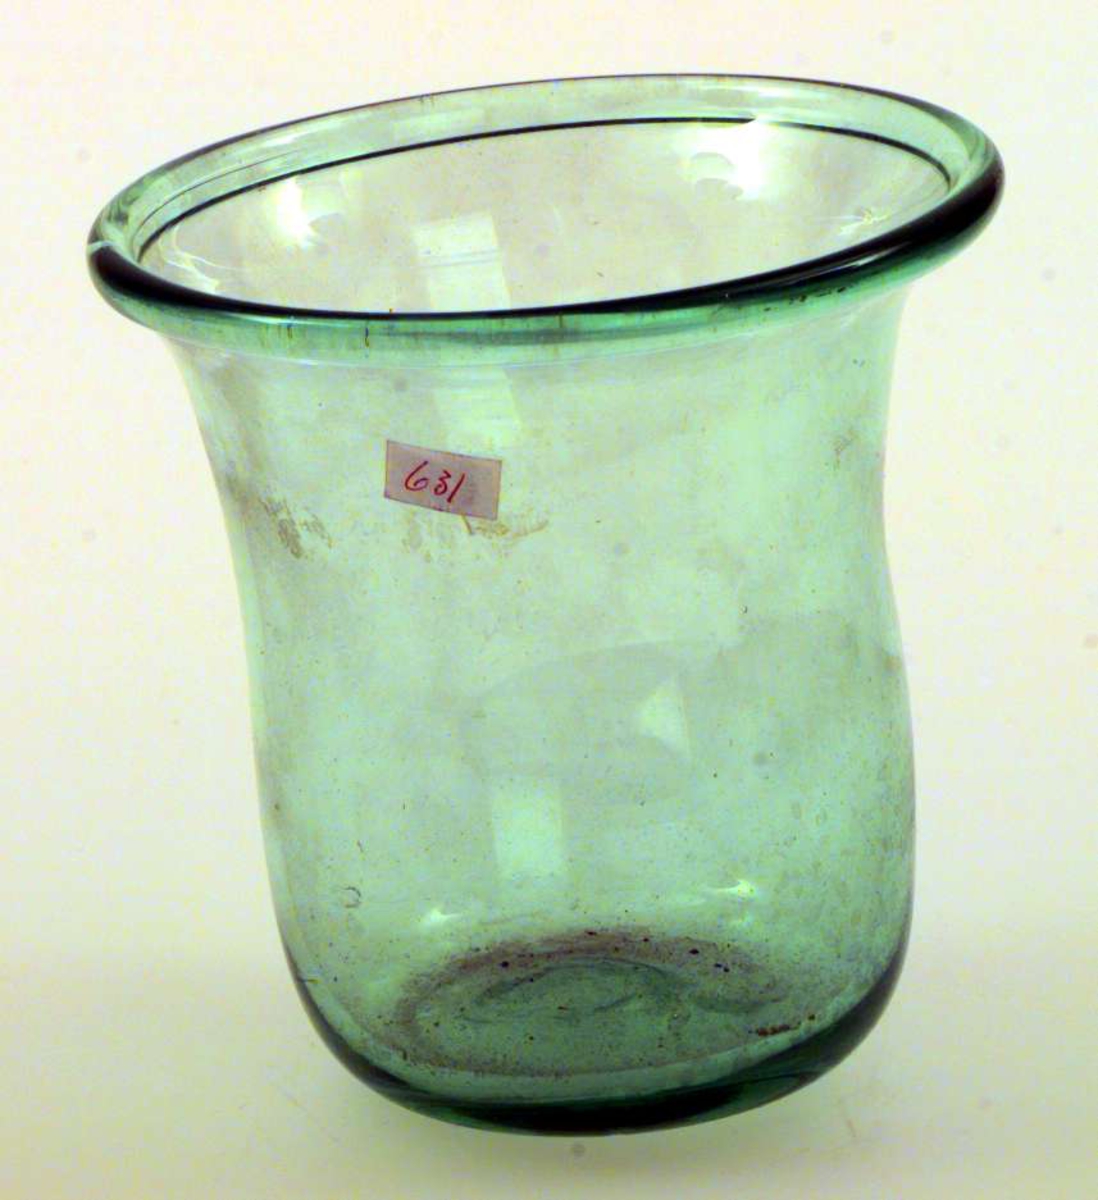 Urtepotten er av glass. Den er svakt grønn. Bunnen er ujevn. Potten er sylinderformet med utbøyet kant.